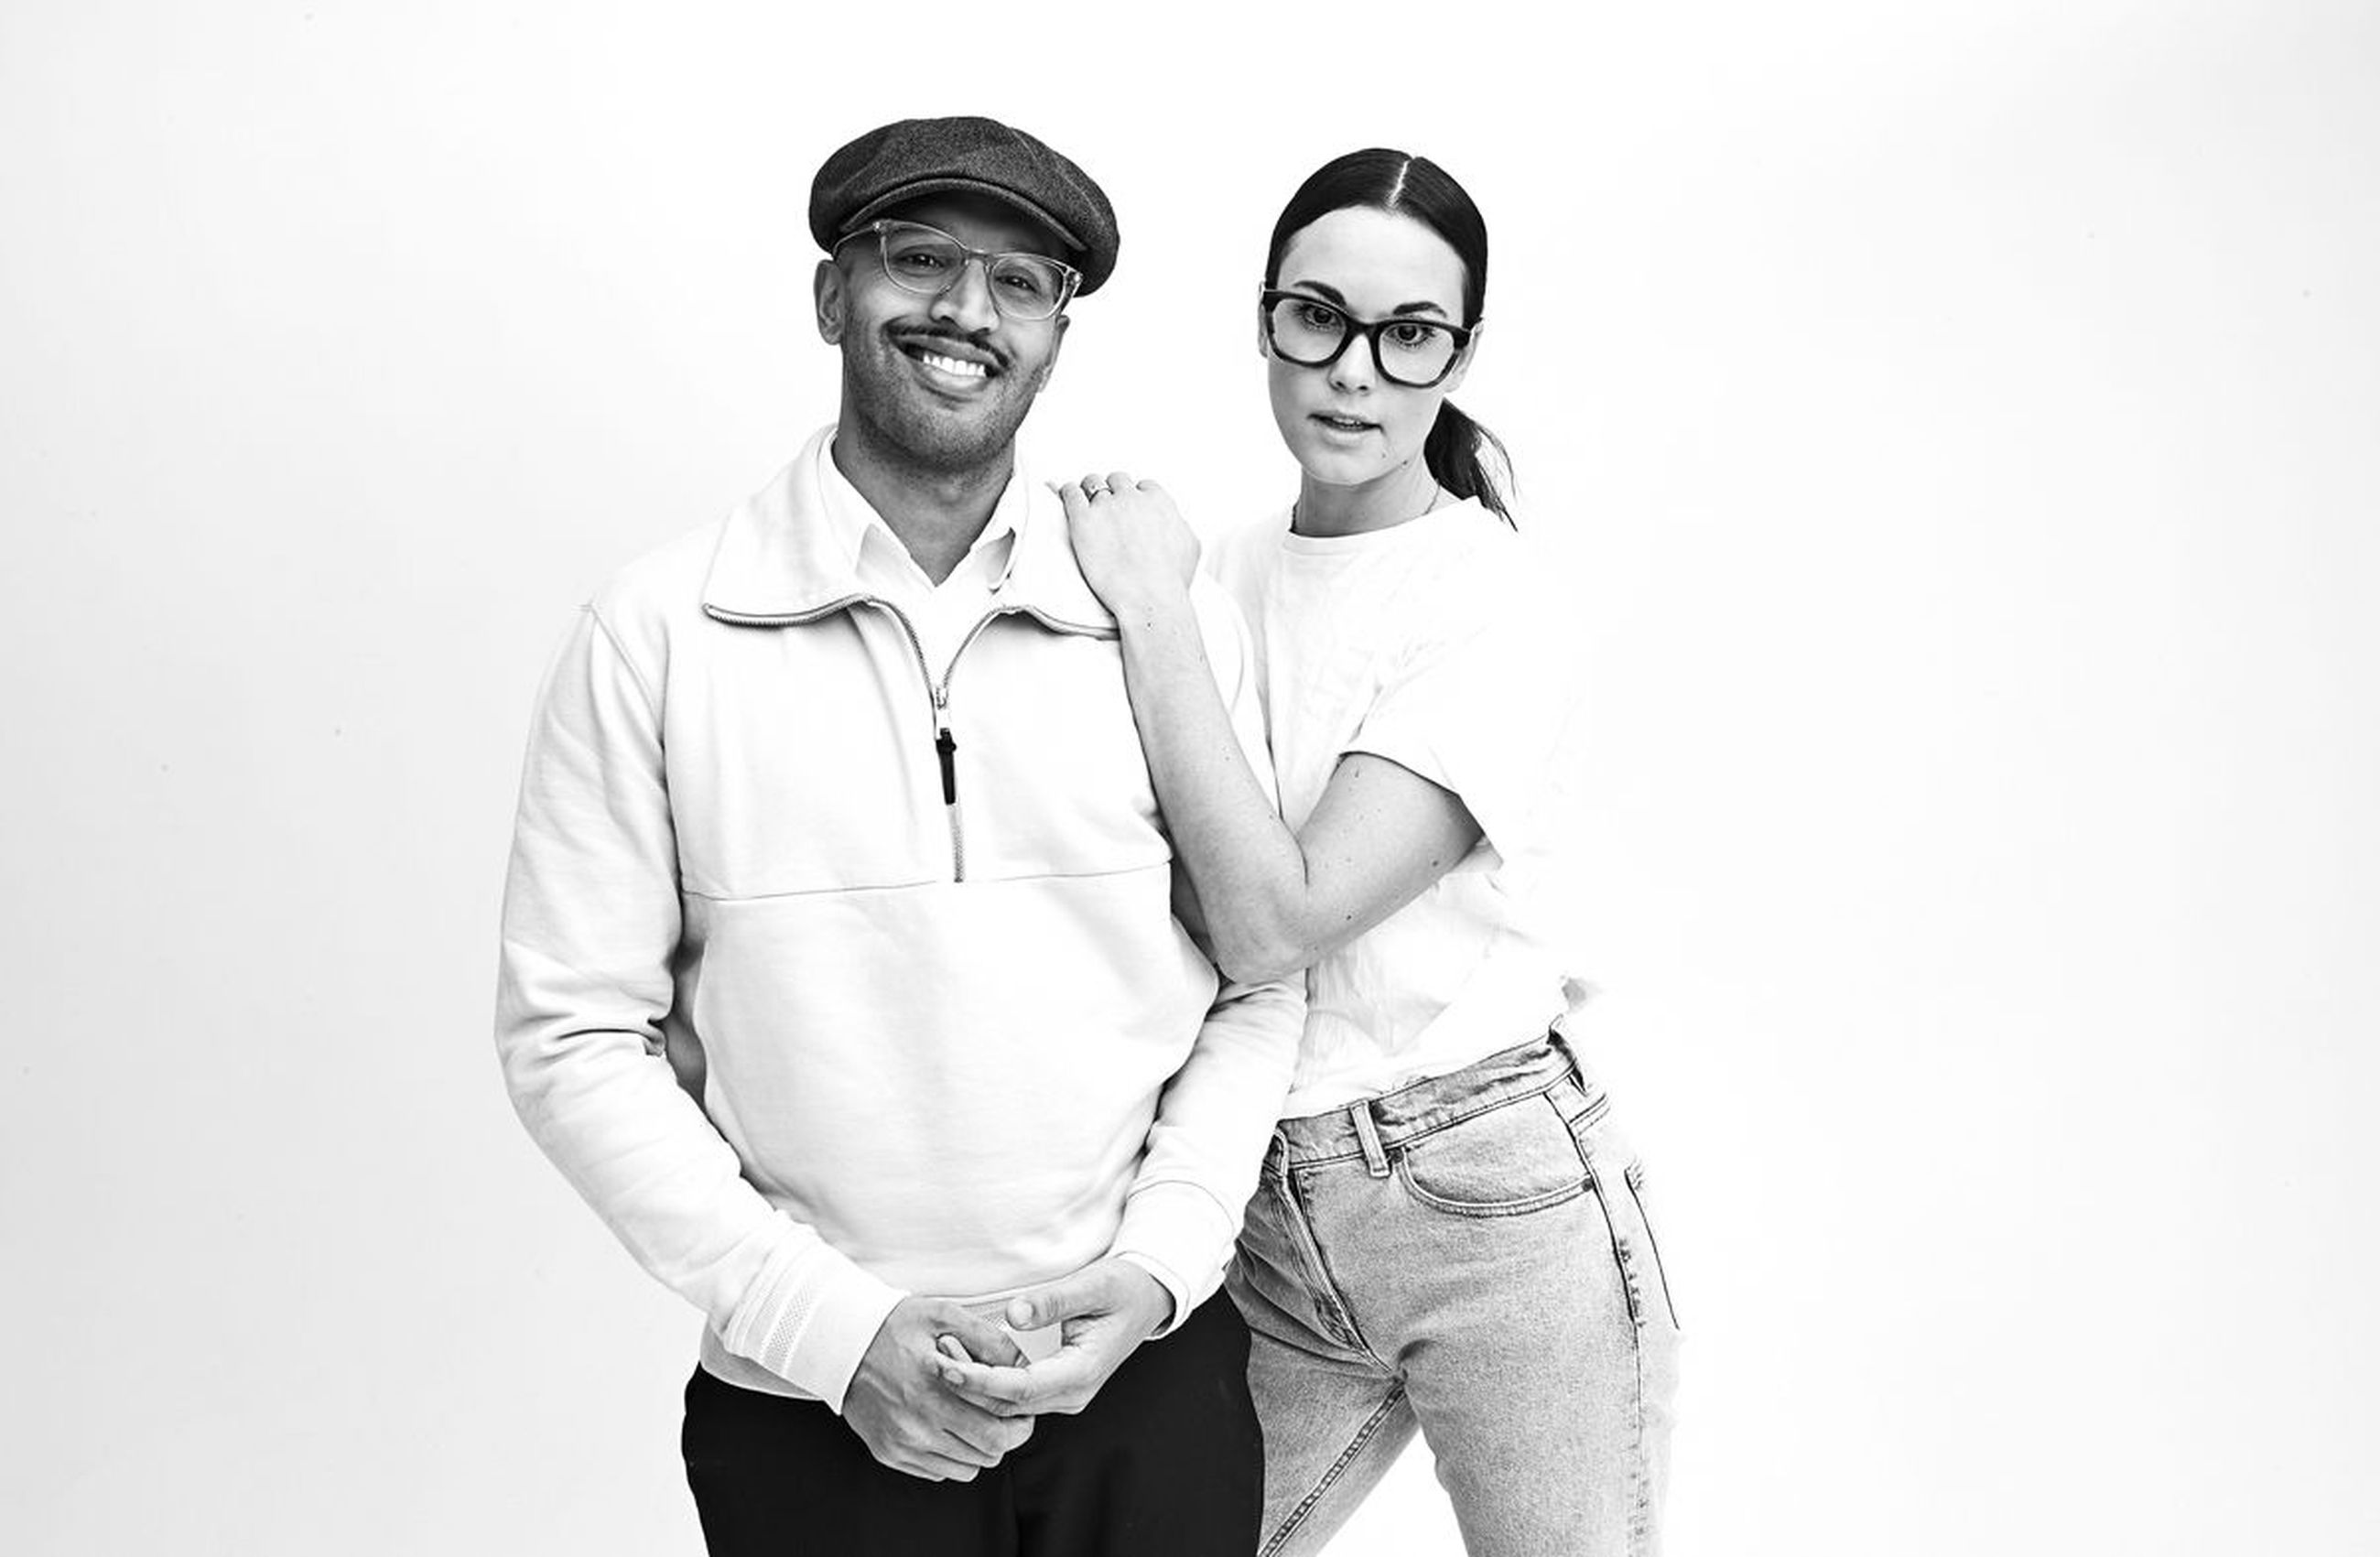 ”Yhteistyö Brilletin kanssa on alkanut todella hyvin ja odotamme innolla, mitä tulevaisuus tuo tullessaan”, toteavat ruotsalaisen EOE Eyewear -yrityksen perustajat Erik ja Emilia Lindmark.